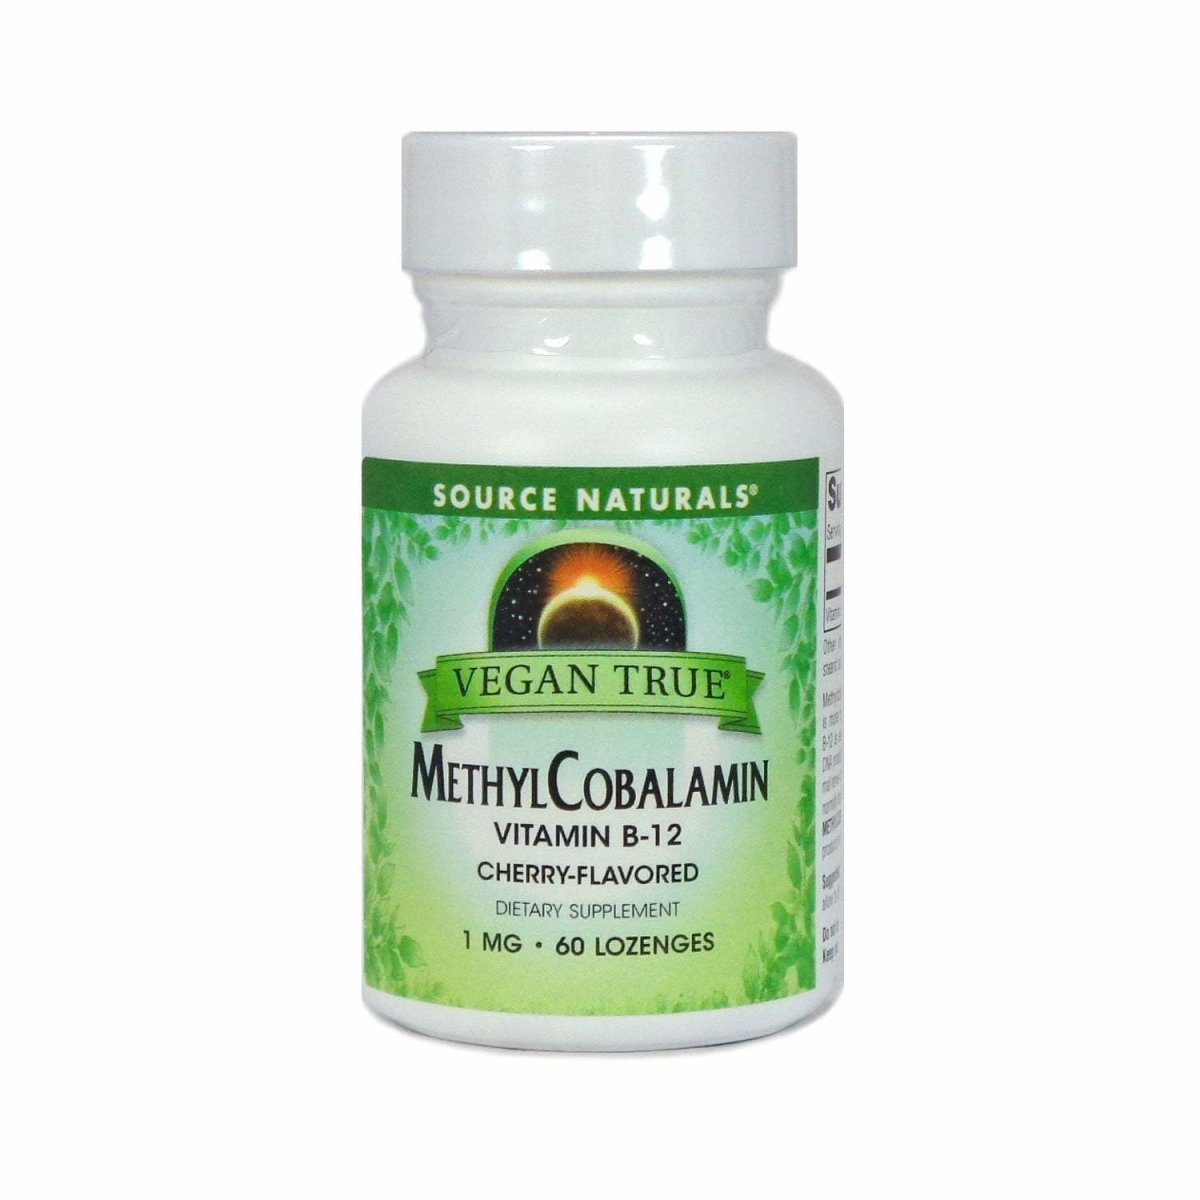 Source Naturals Vegan True Methylcobalamin Vitamin B 12, 60 Count